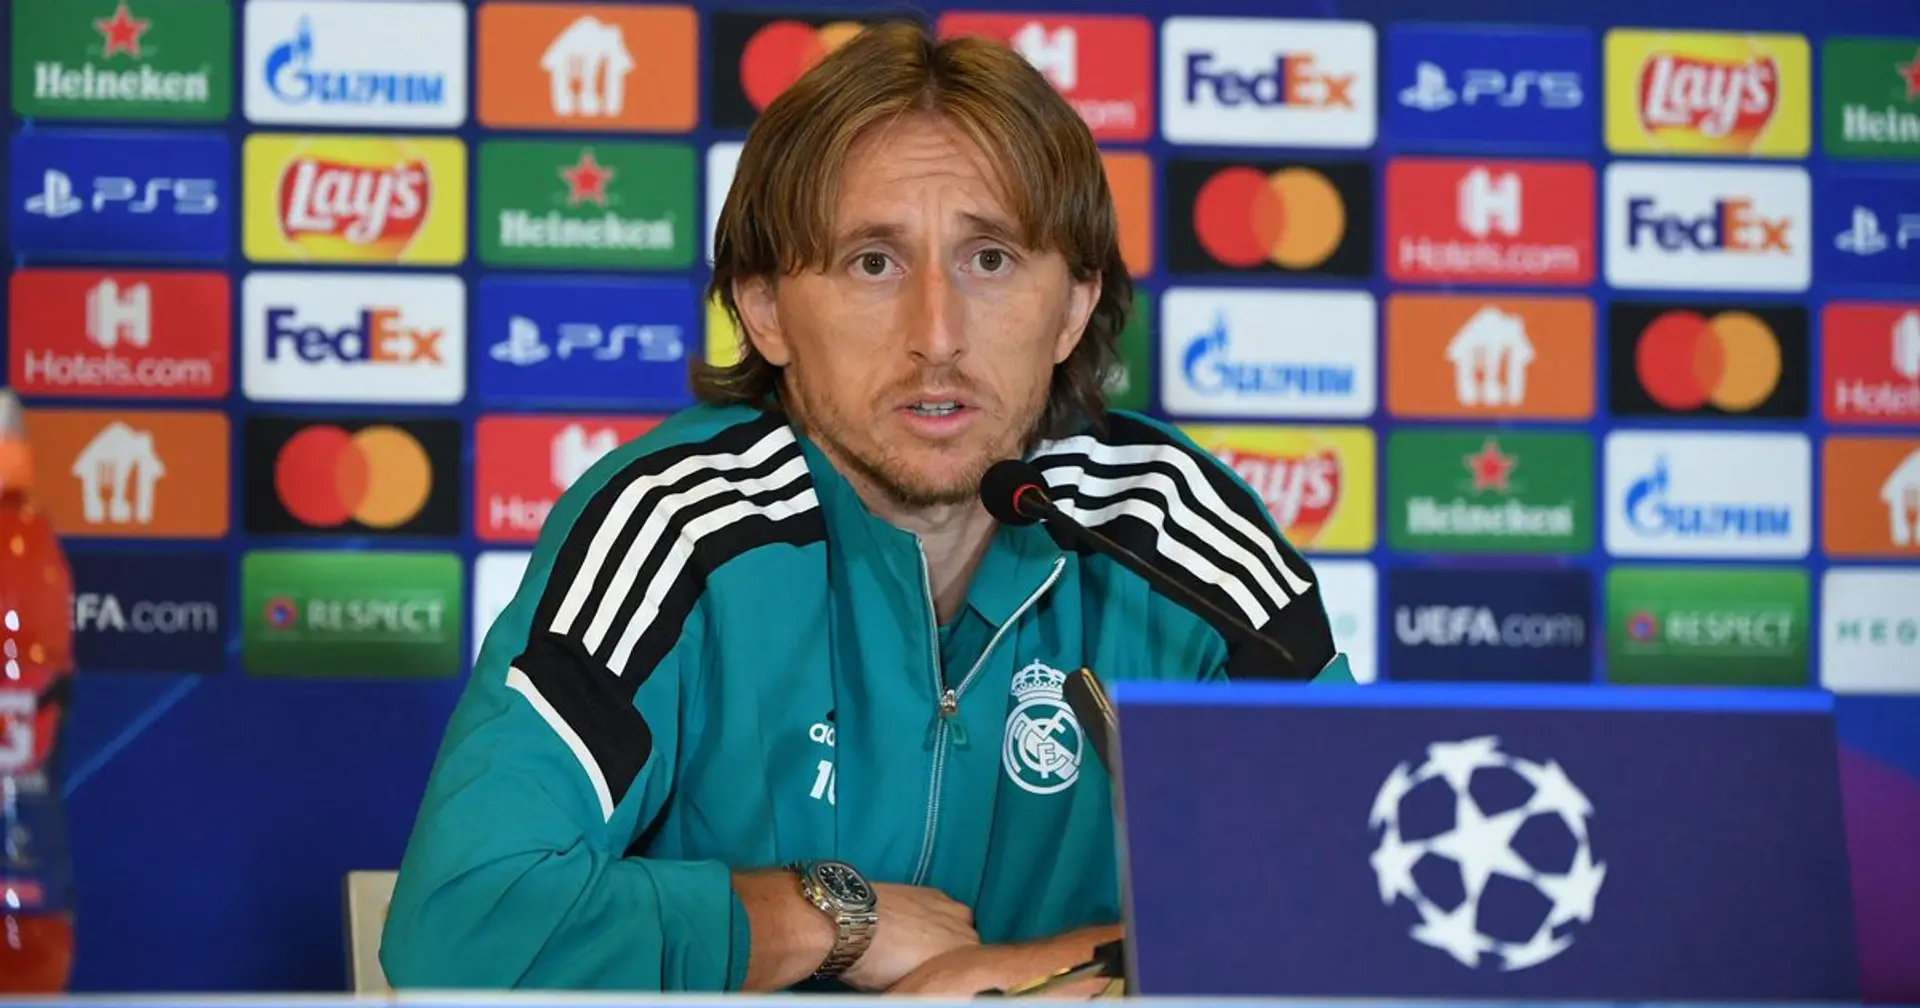 El Real Madrid está 'preparado' para ofrecer un nuevo contrato a Modric (fiabilidad: 4 estrellas)